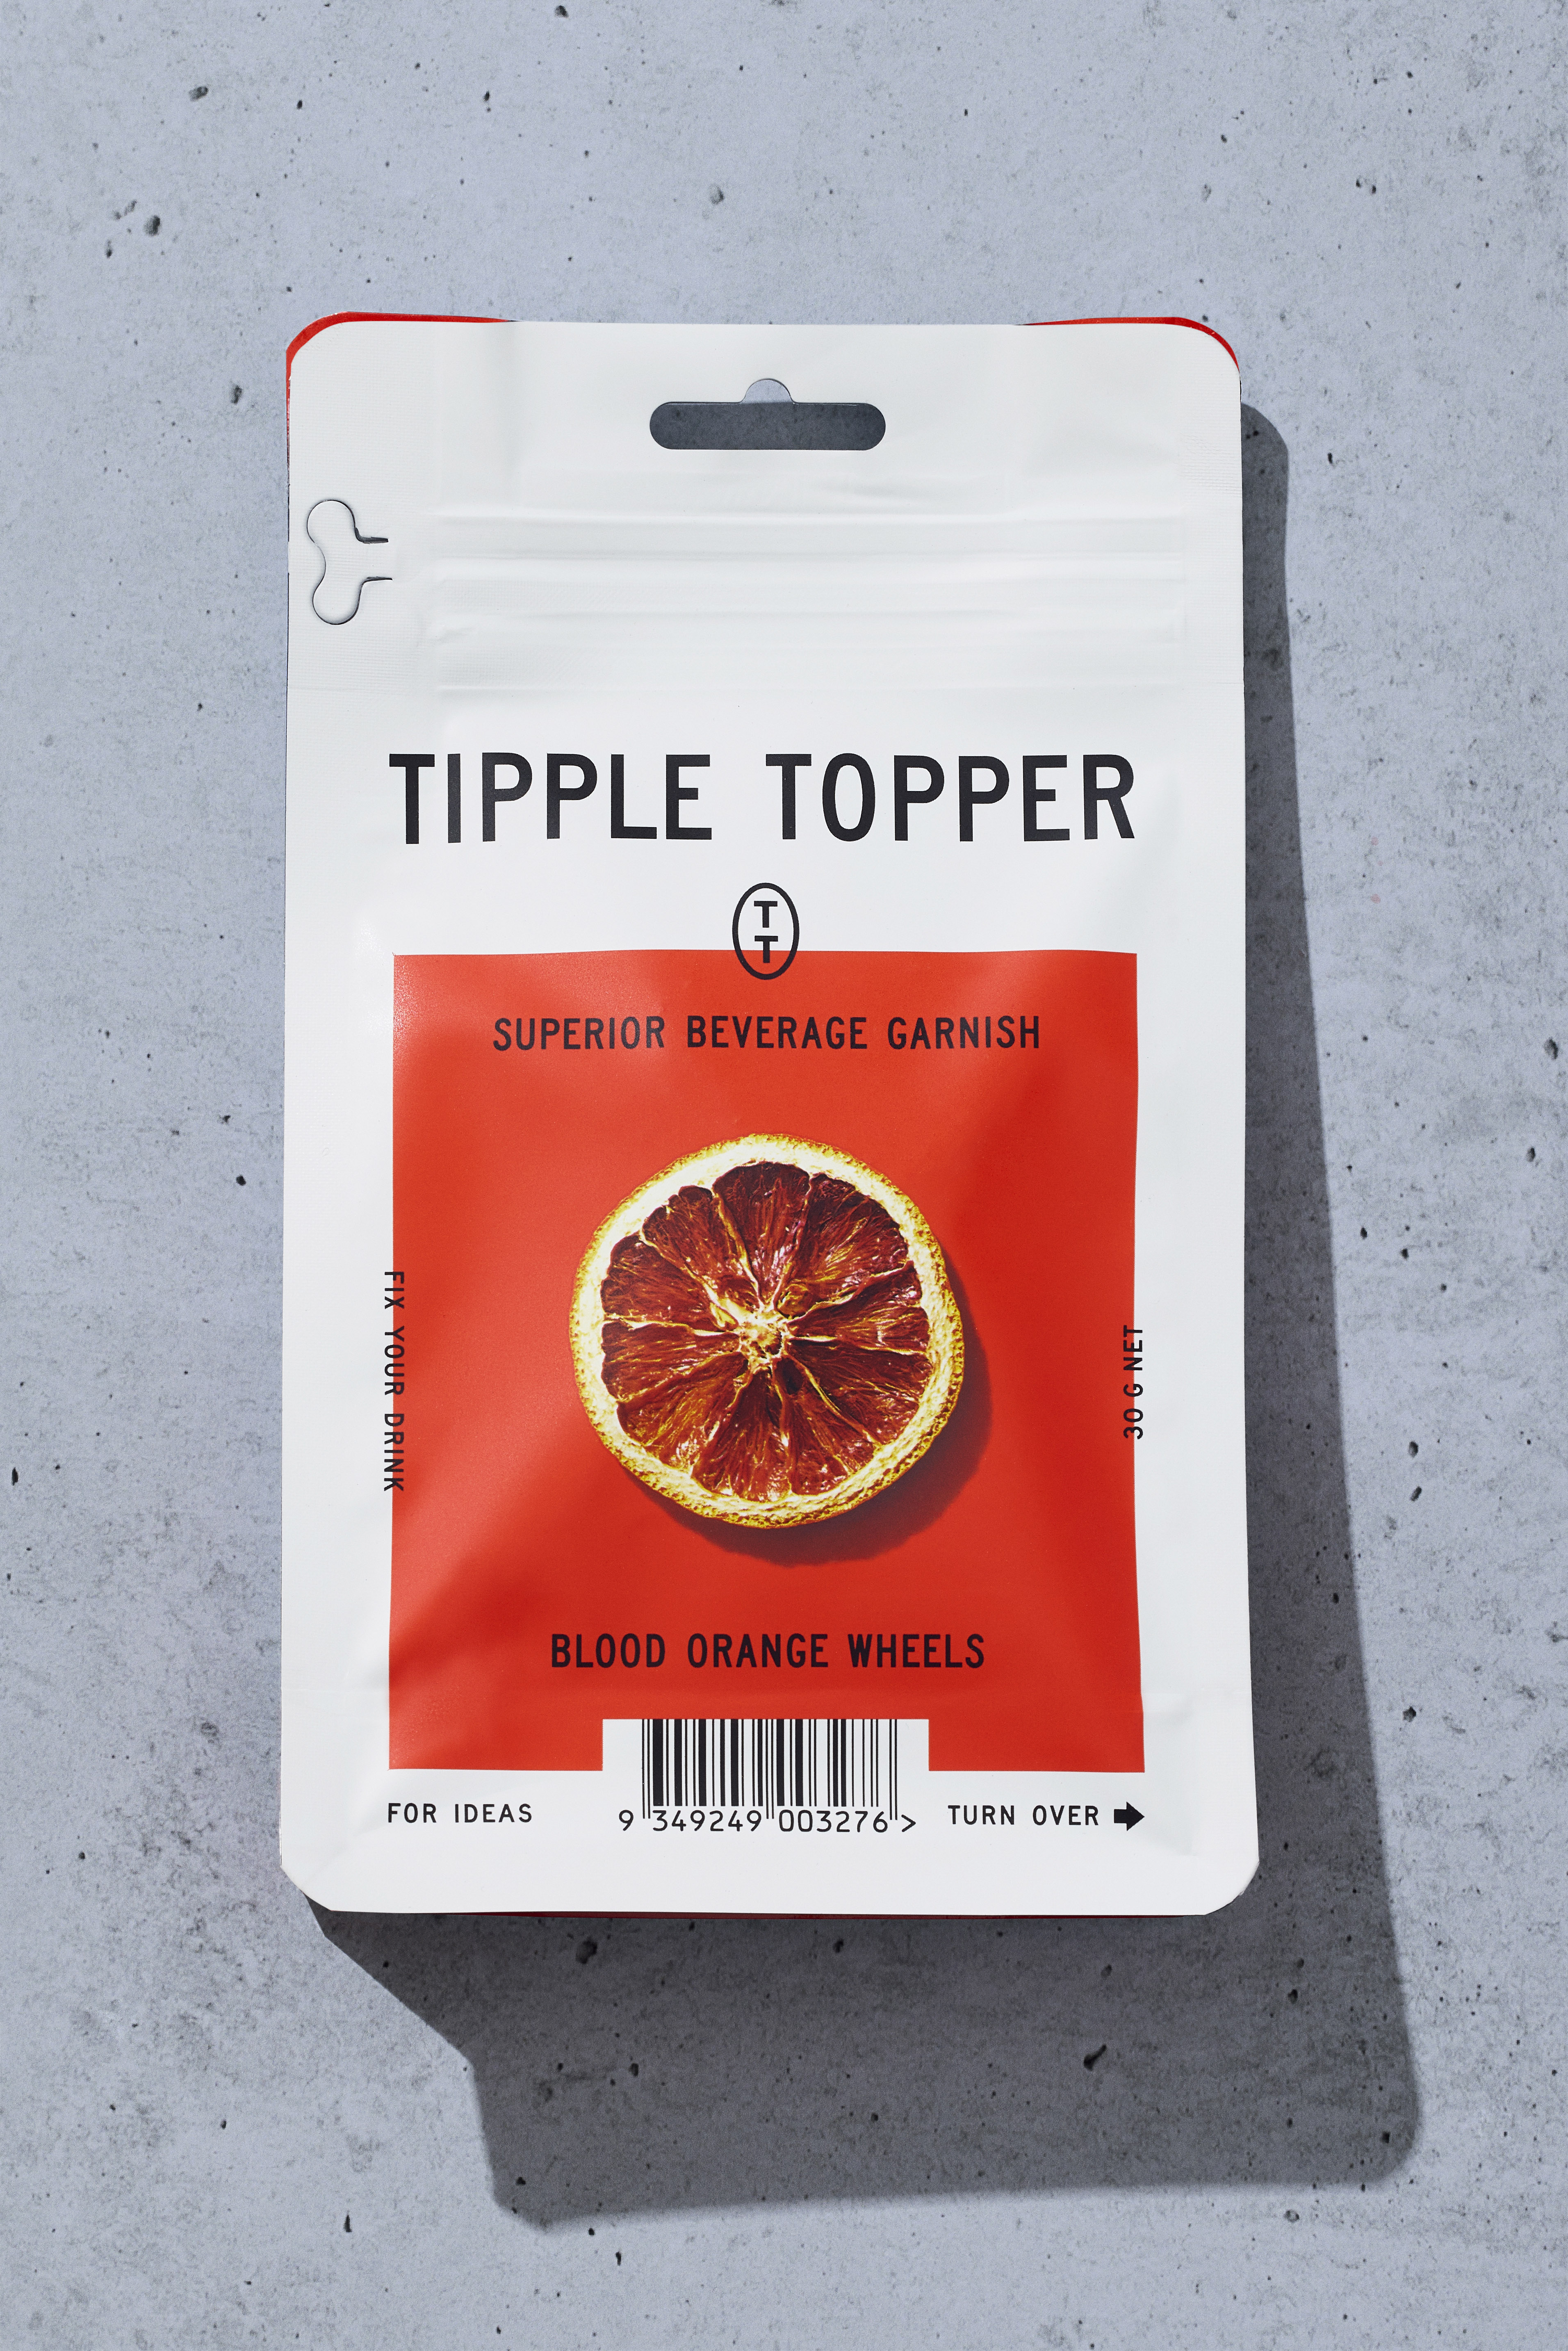 Identitas merek, desain kemasan, dan arahan seni oleh Desain Marx untuk merek hiasan koktail Australia Tipple Topper